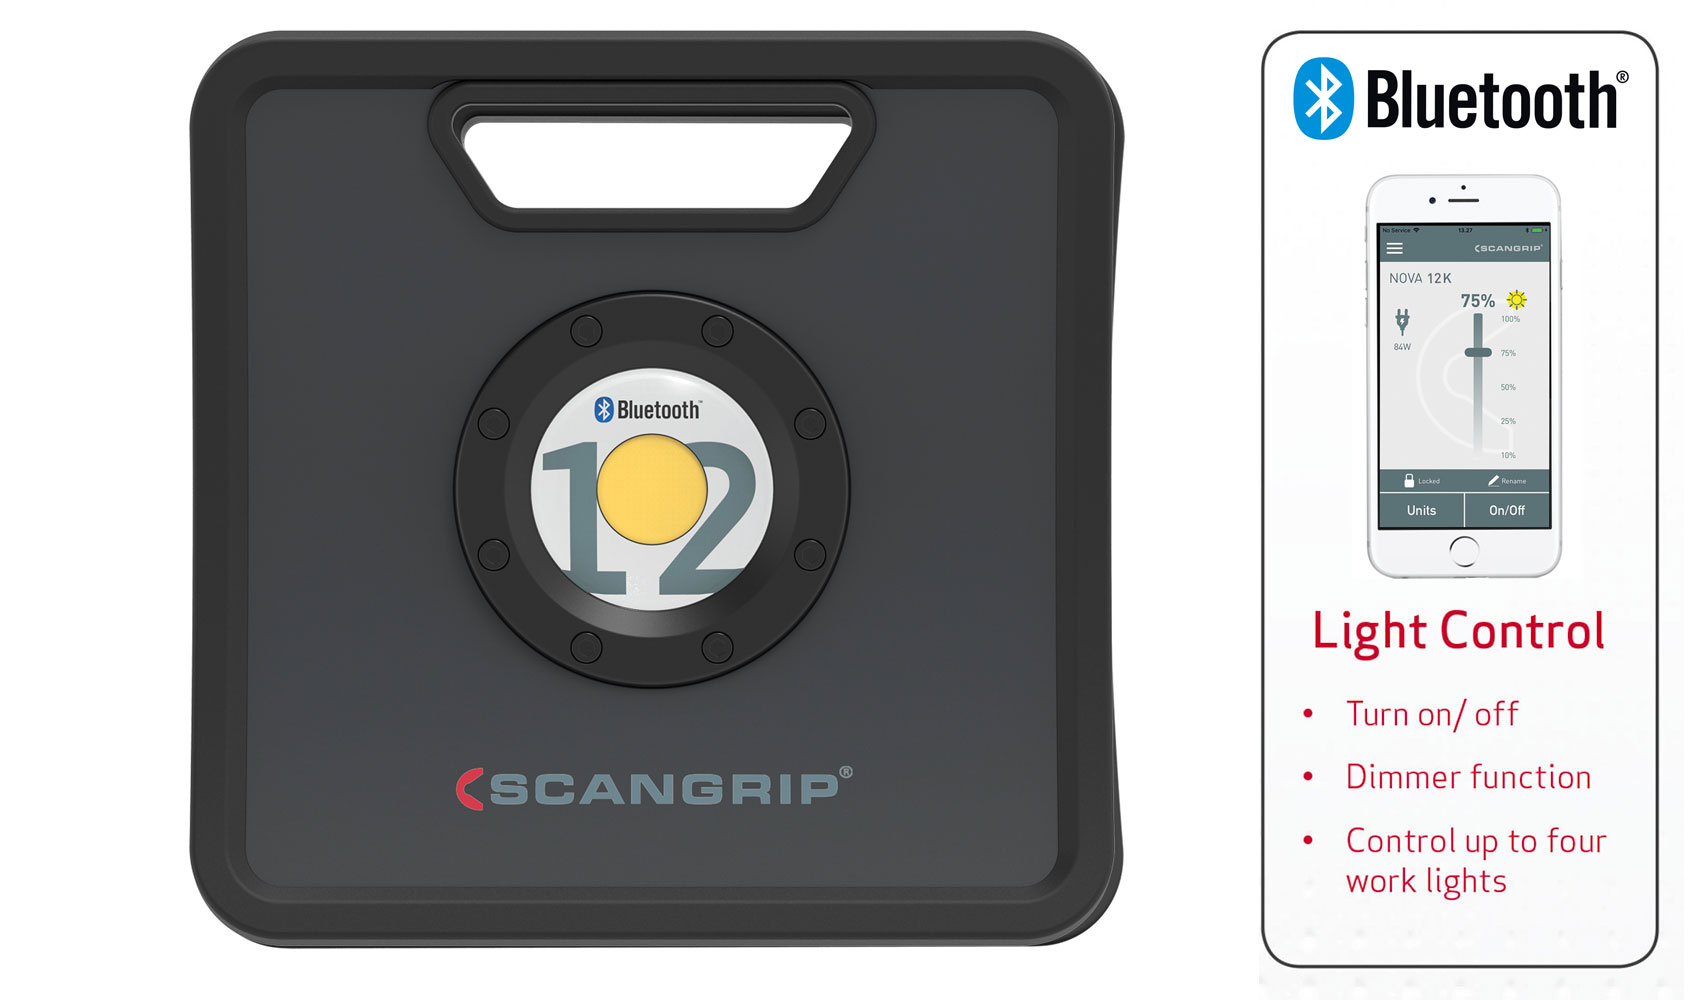 Scangrip NOVA 12K - Bluetooth Light Control